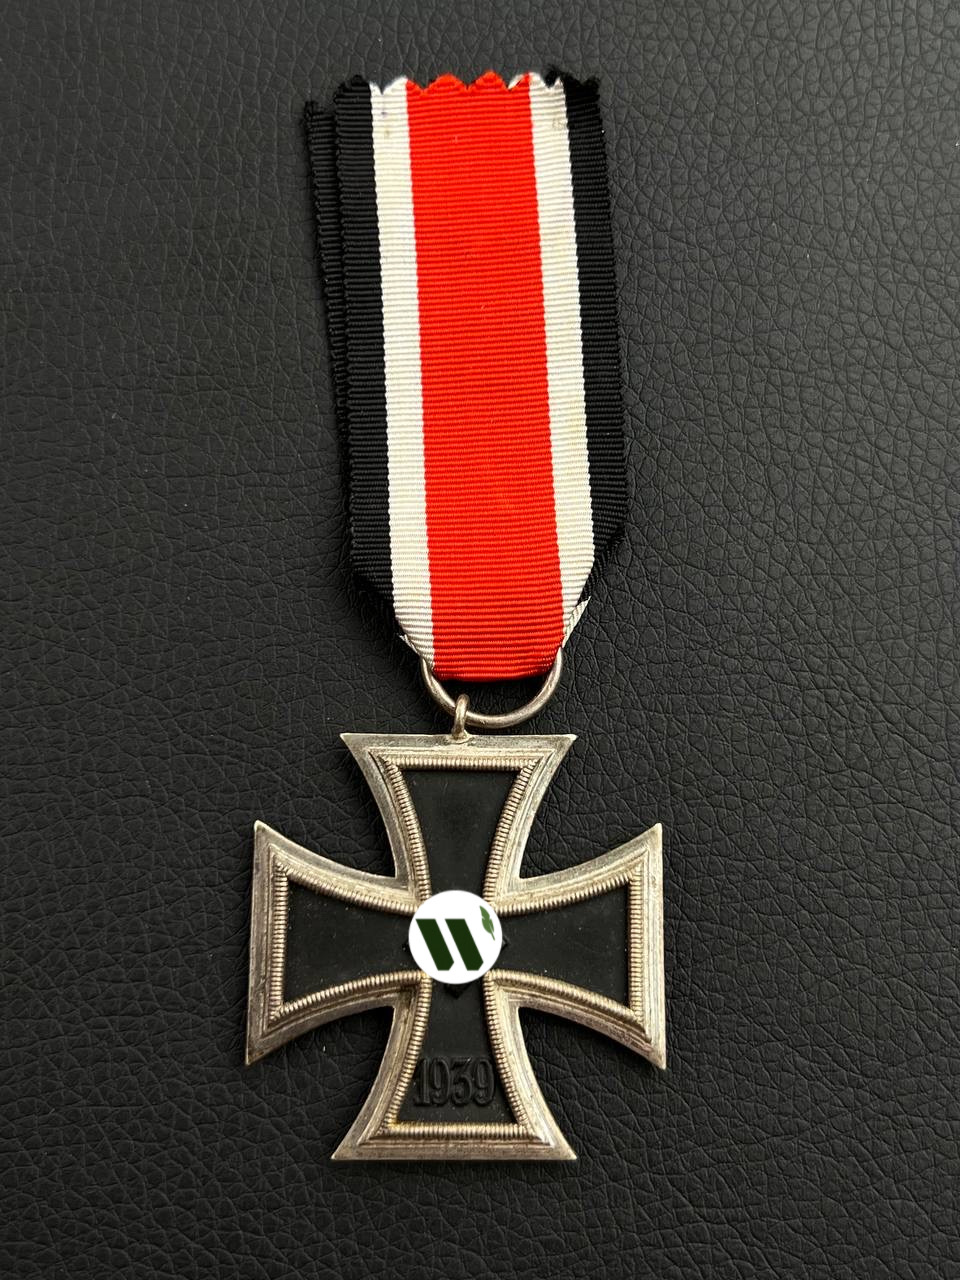 Железный крест 2-го класса 1939 года. Составной, магнитный. Производитель Wilhelm Deumer, Lüdenscheid.